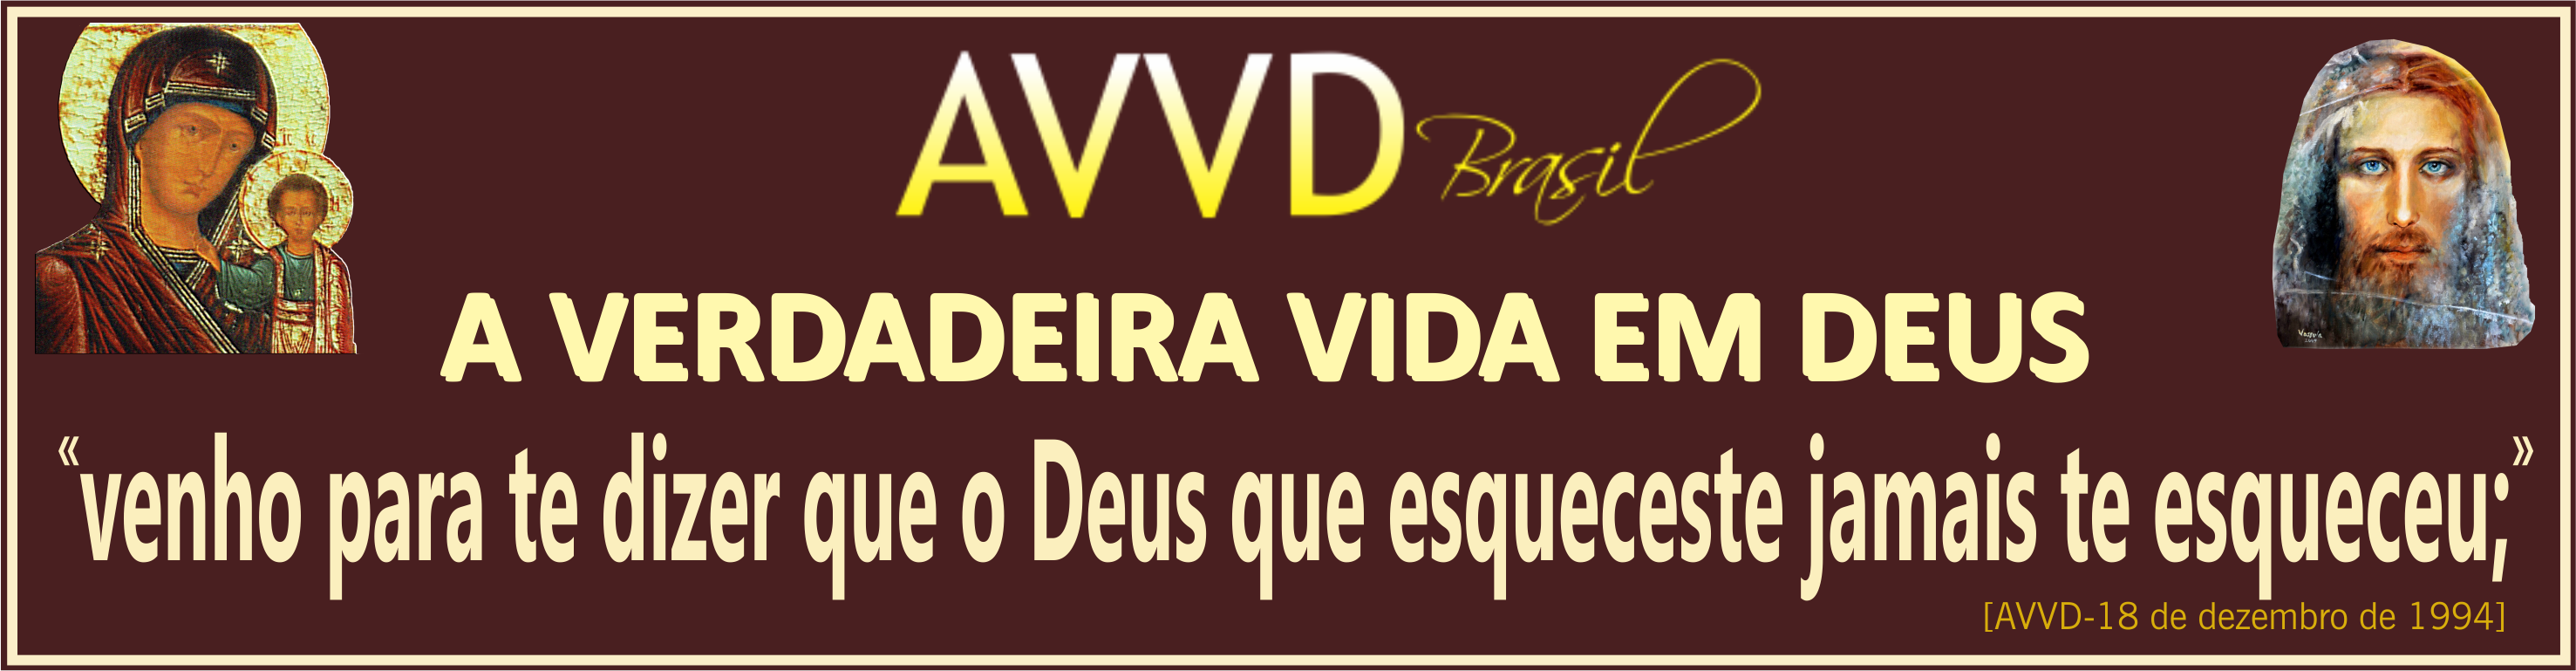 avvd - logo